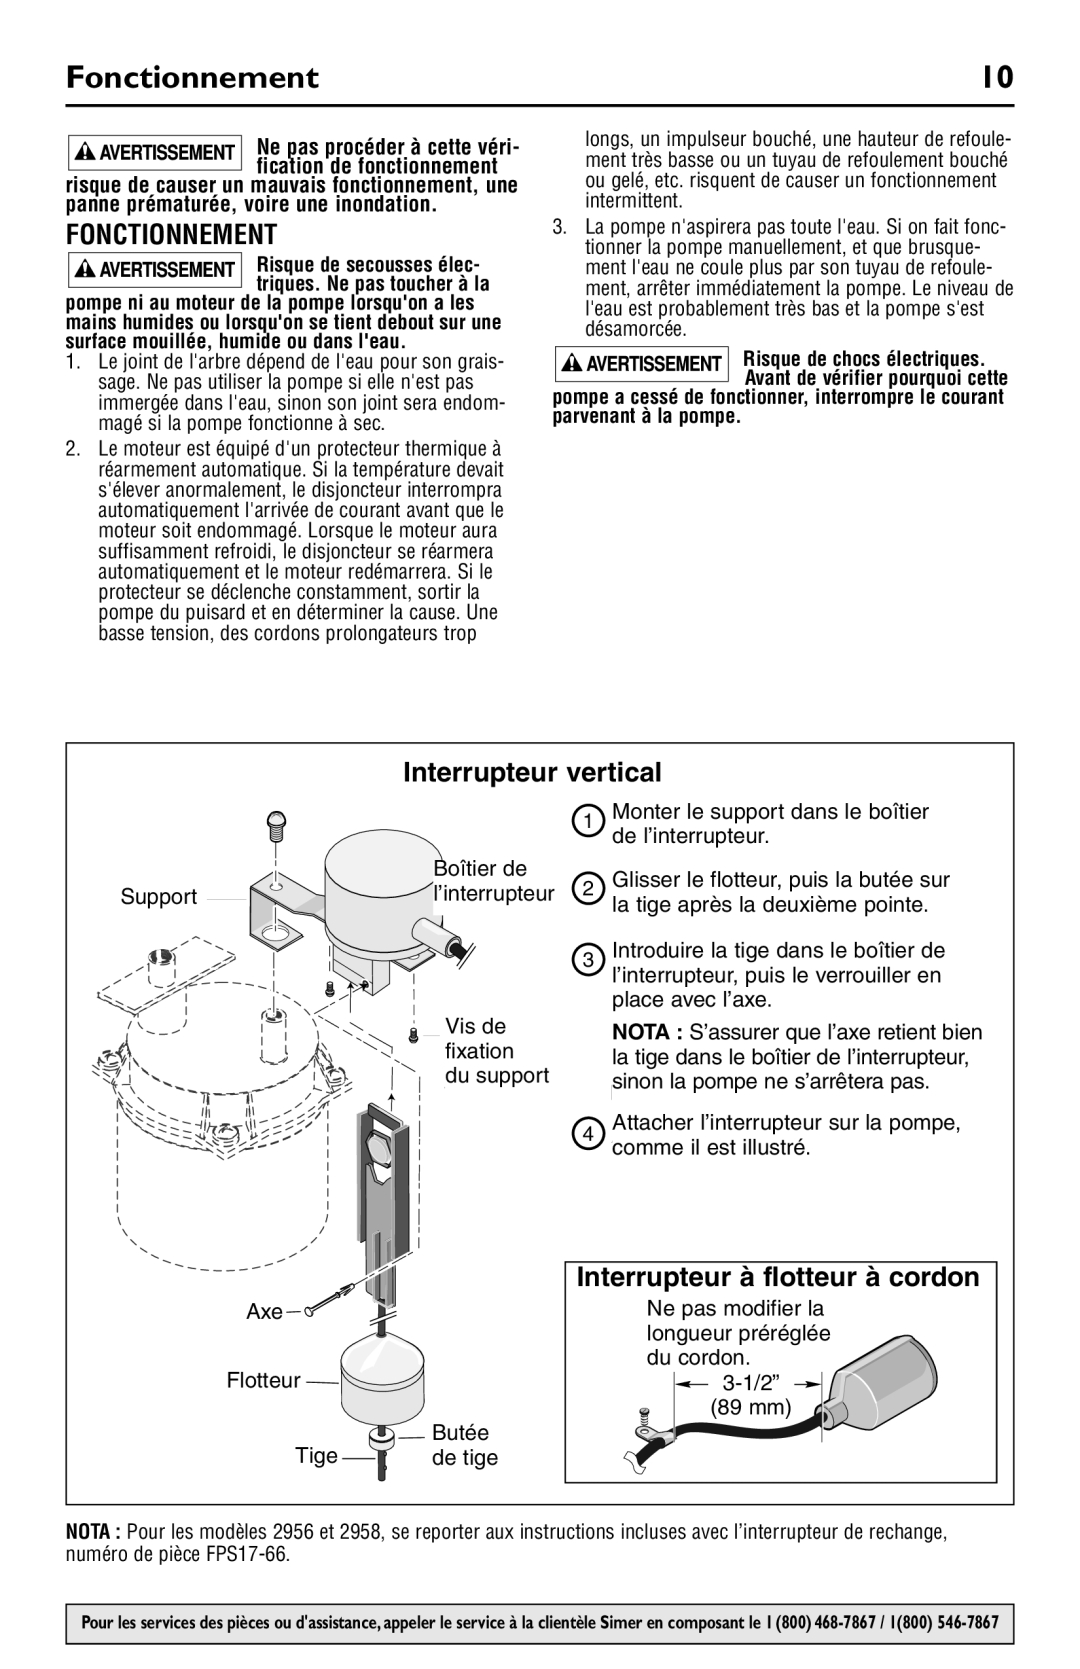 Simer Pumps 2945, 2958, 2956, 2943 owner manual Fonctionnement, Interrupteur vertical, Interrupteur à flotteur à cordon 